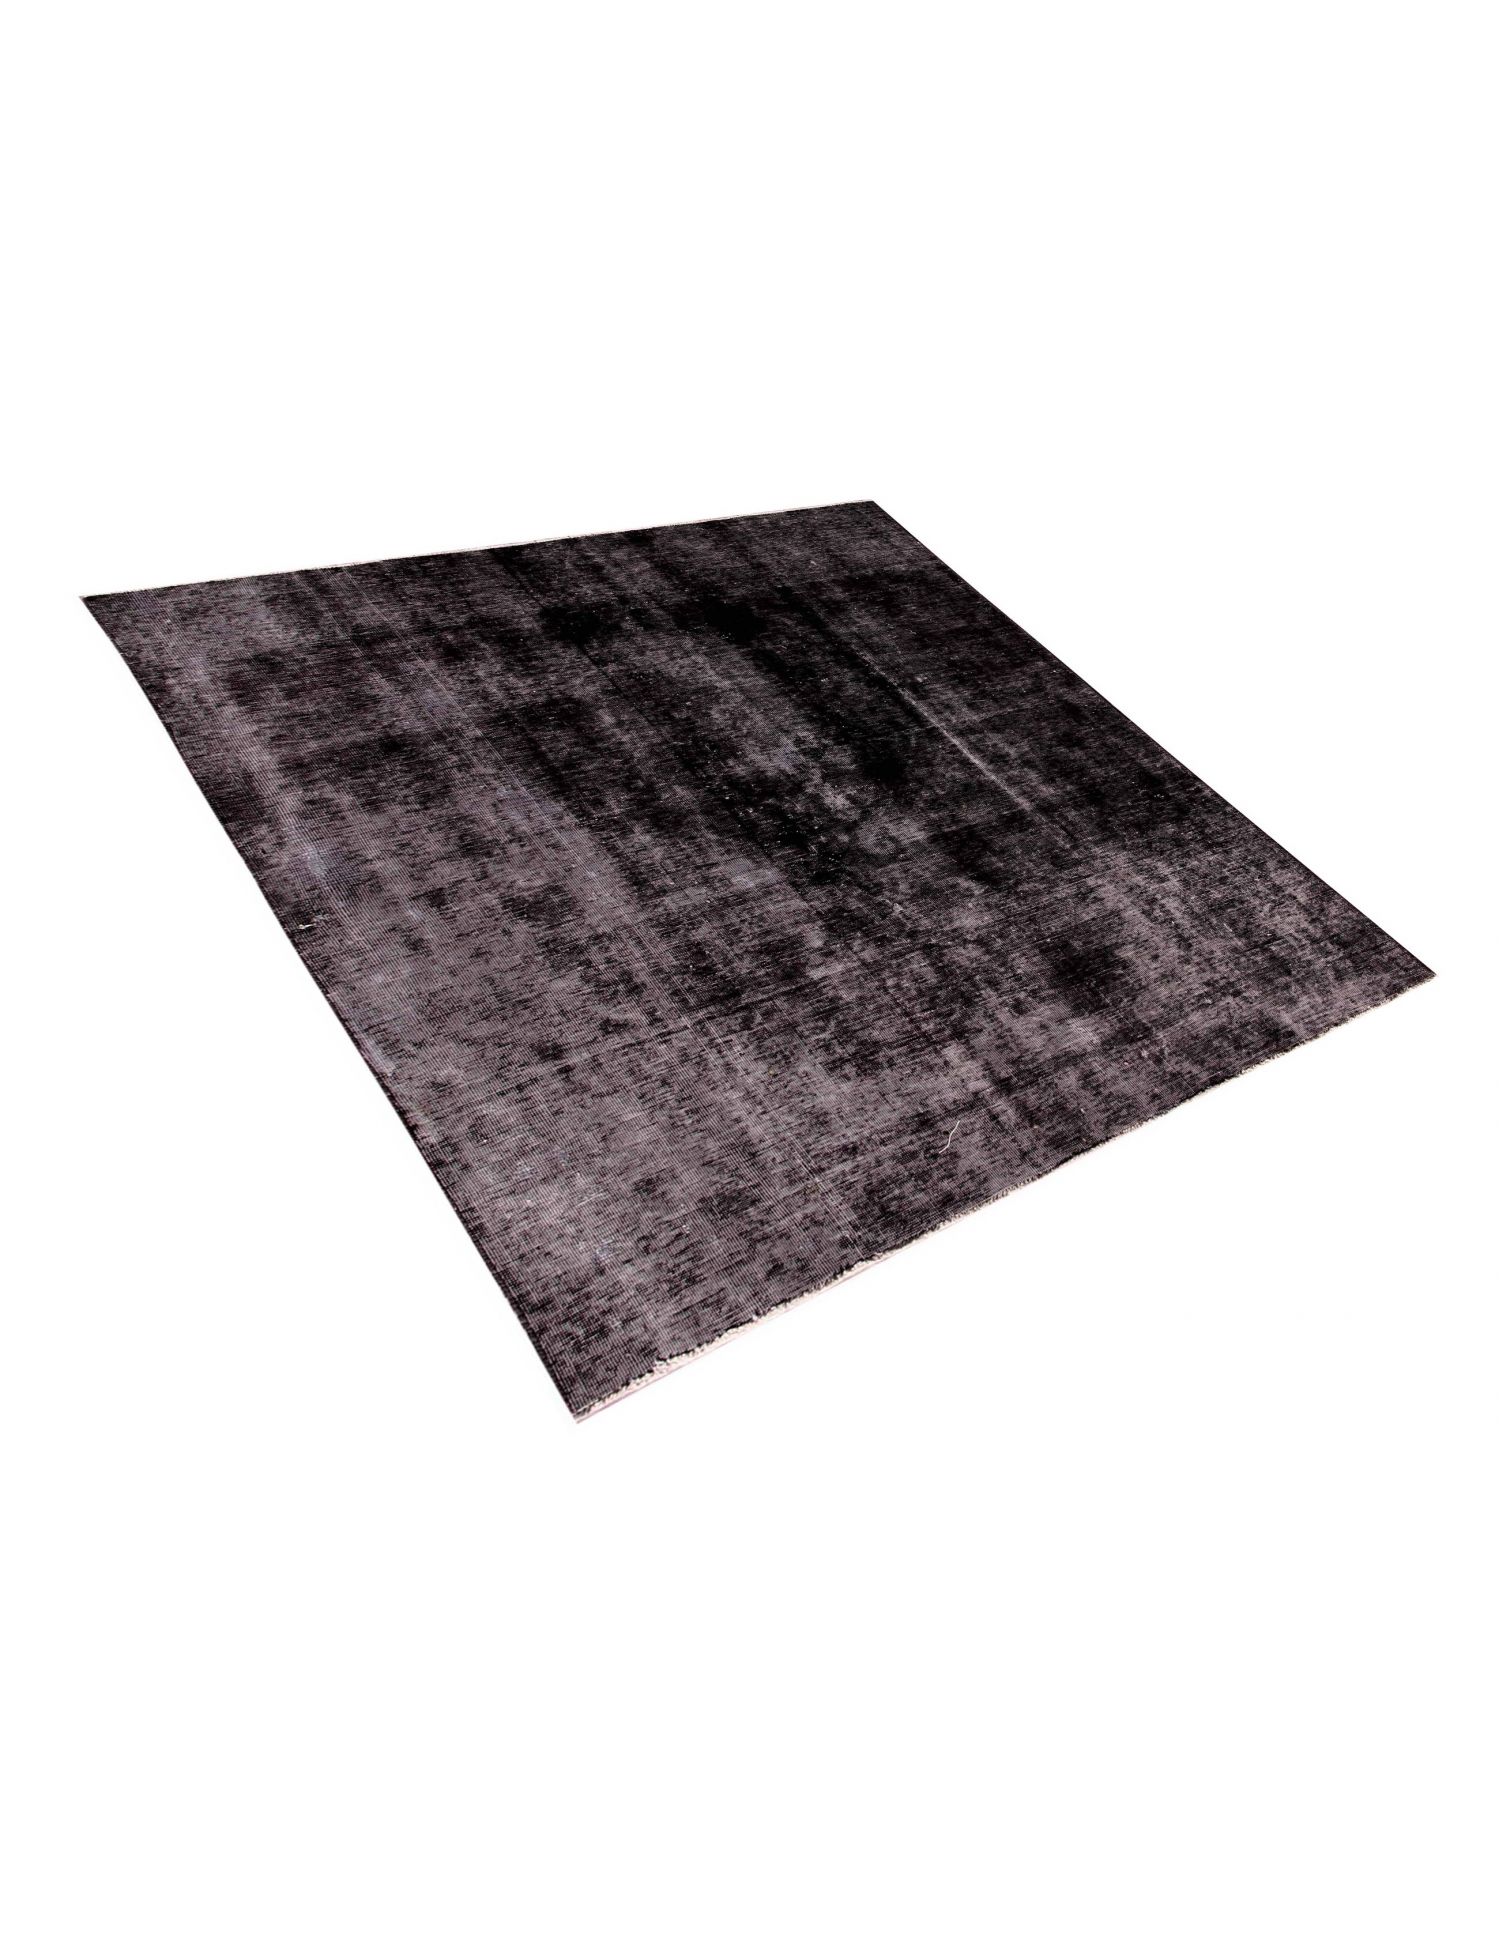 Persian Vintage Carpet  black <br/>220 x 180 cm